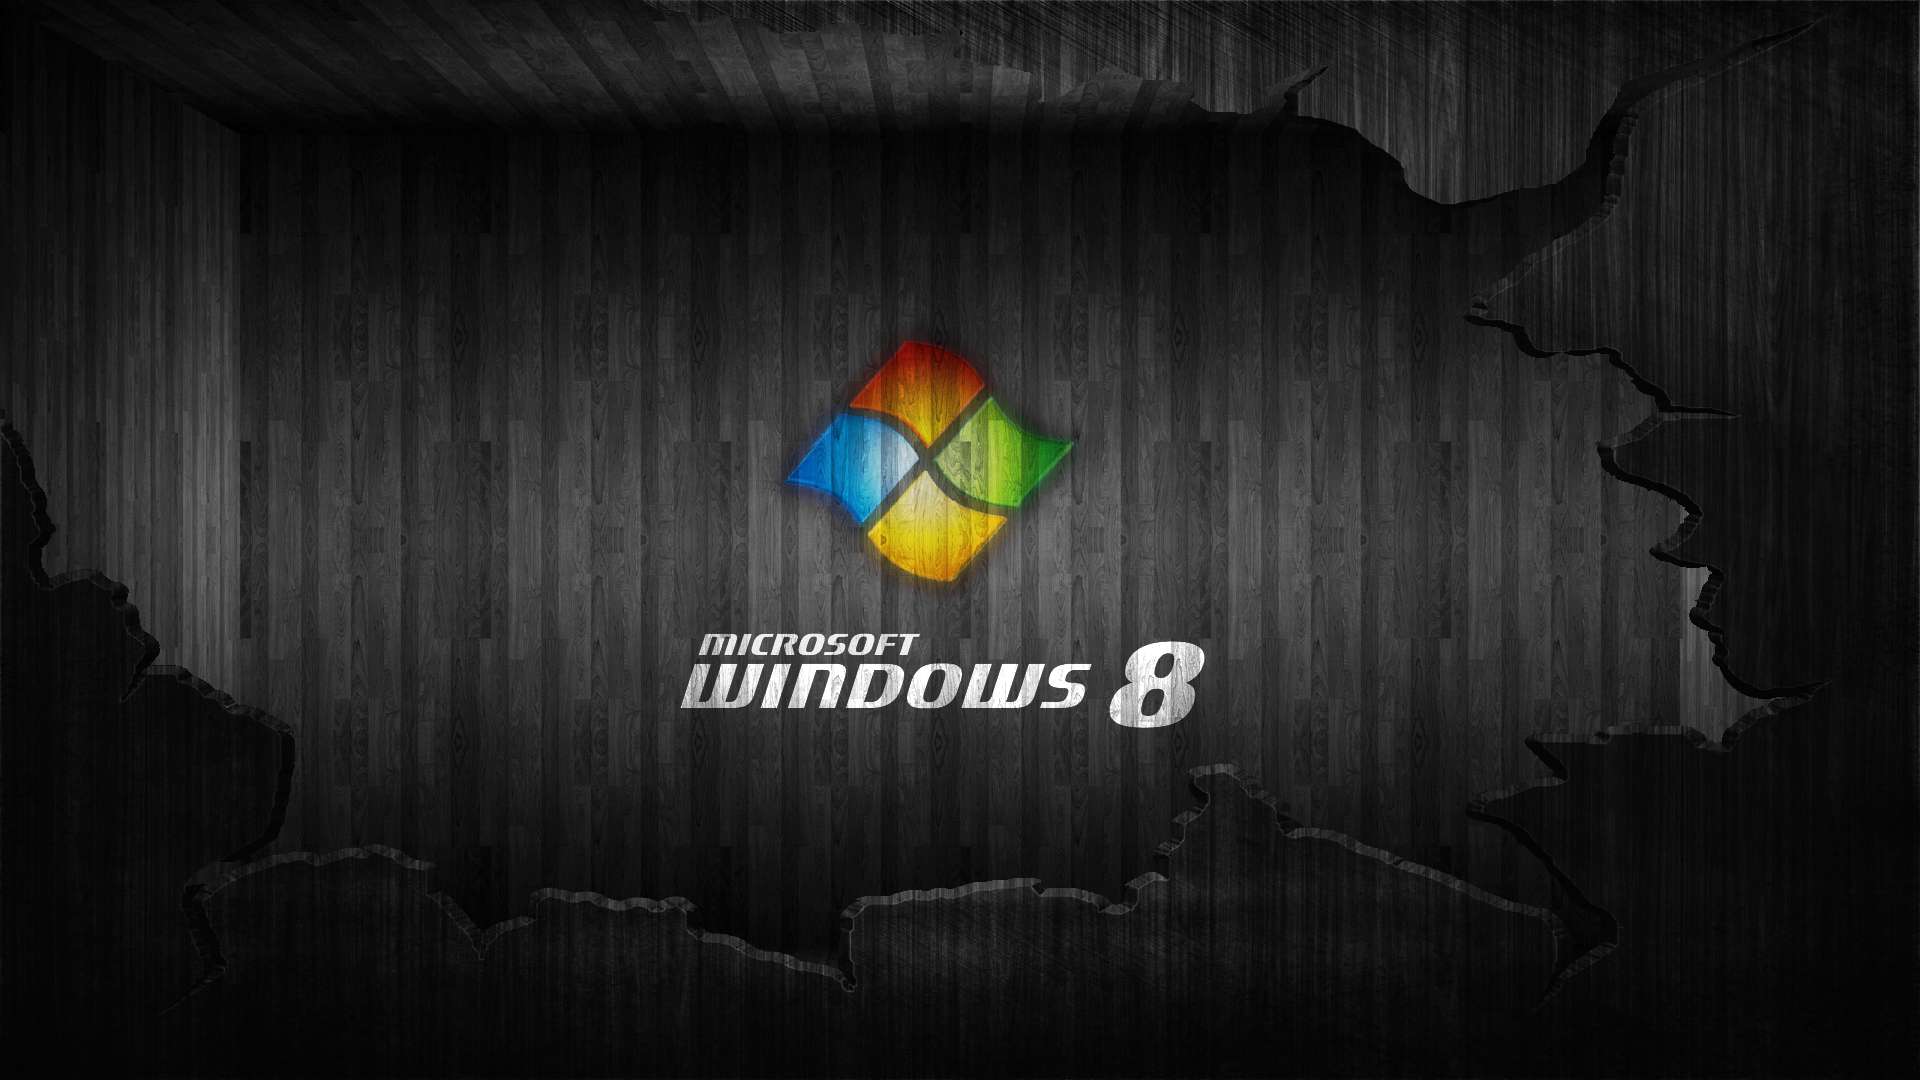 Windows 8 Black Wallpaper Full HD - Uncalke.com